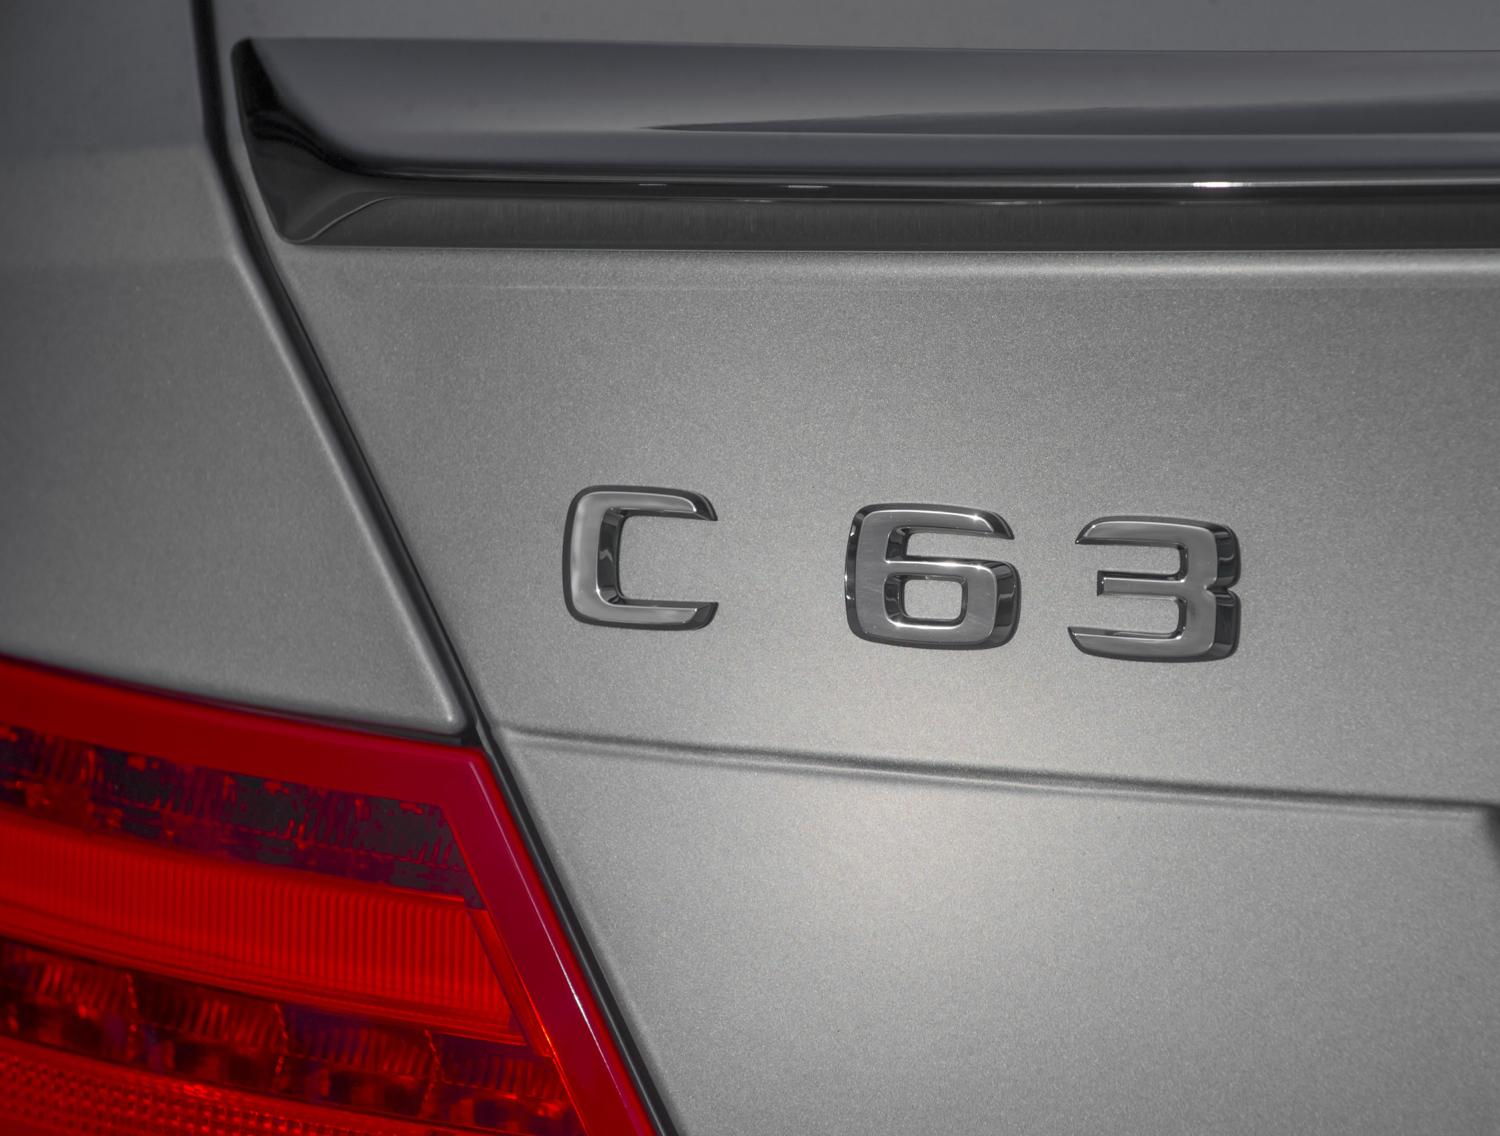 2014 Mercedes-Benz C63 AMG Edition 507 sedan